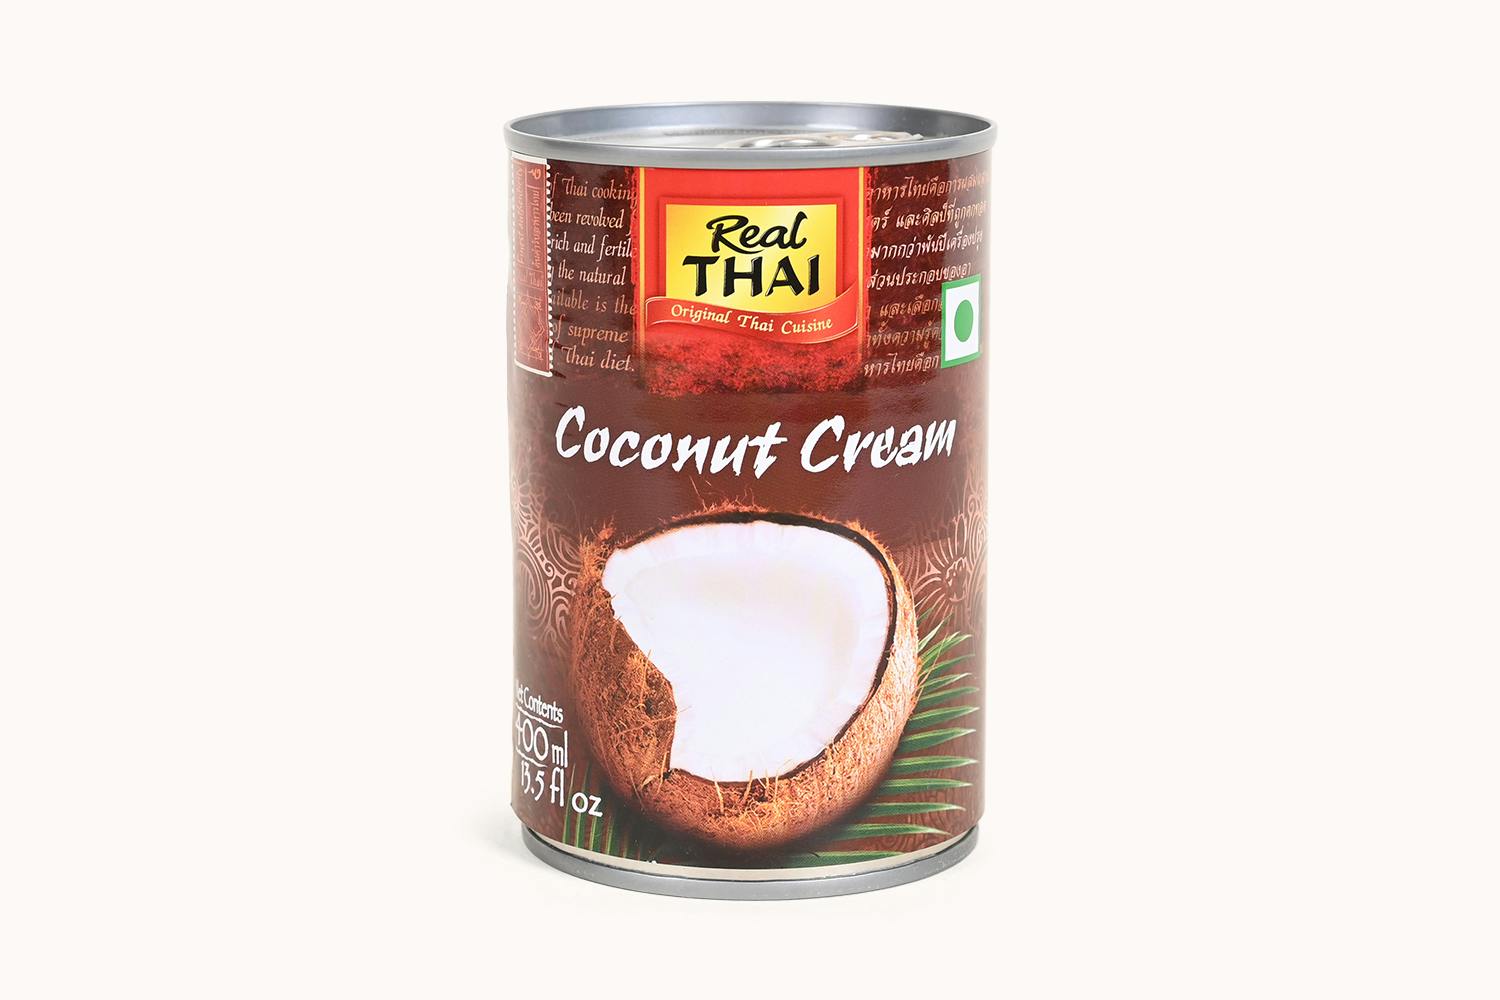 Real Thai Coconut Cream